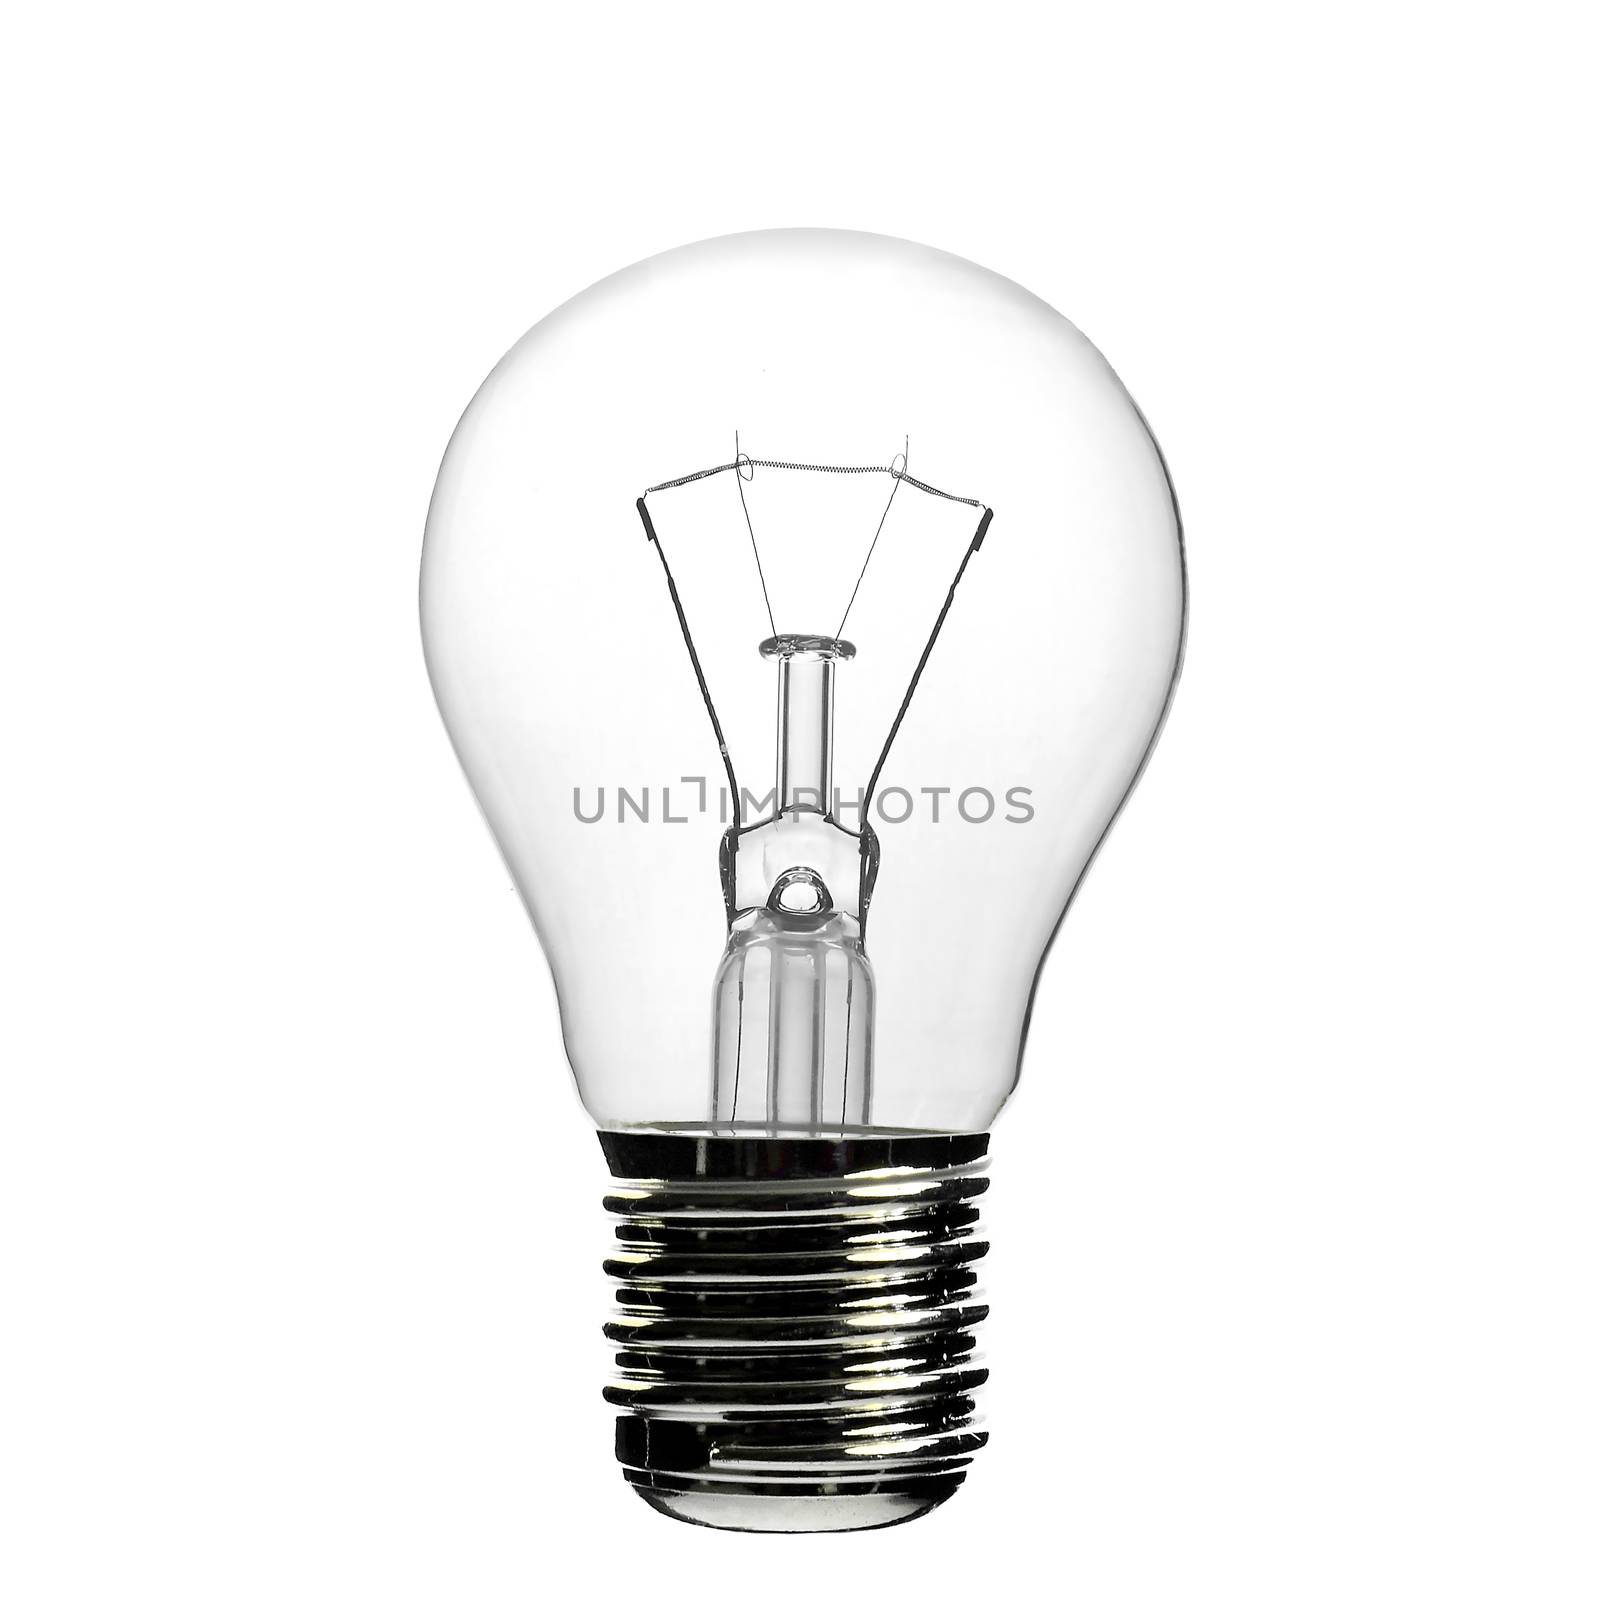 Incandescent light bulb on white